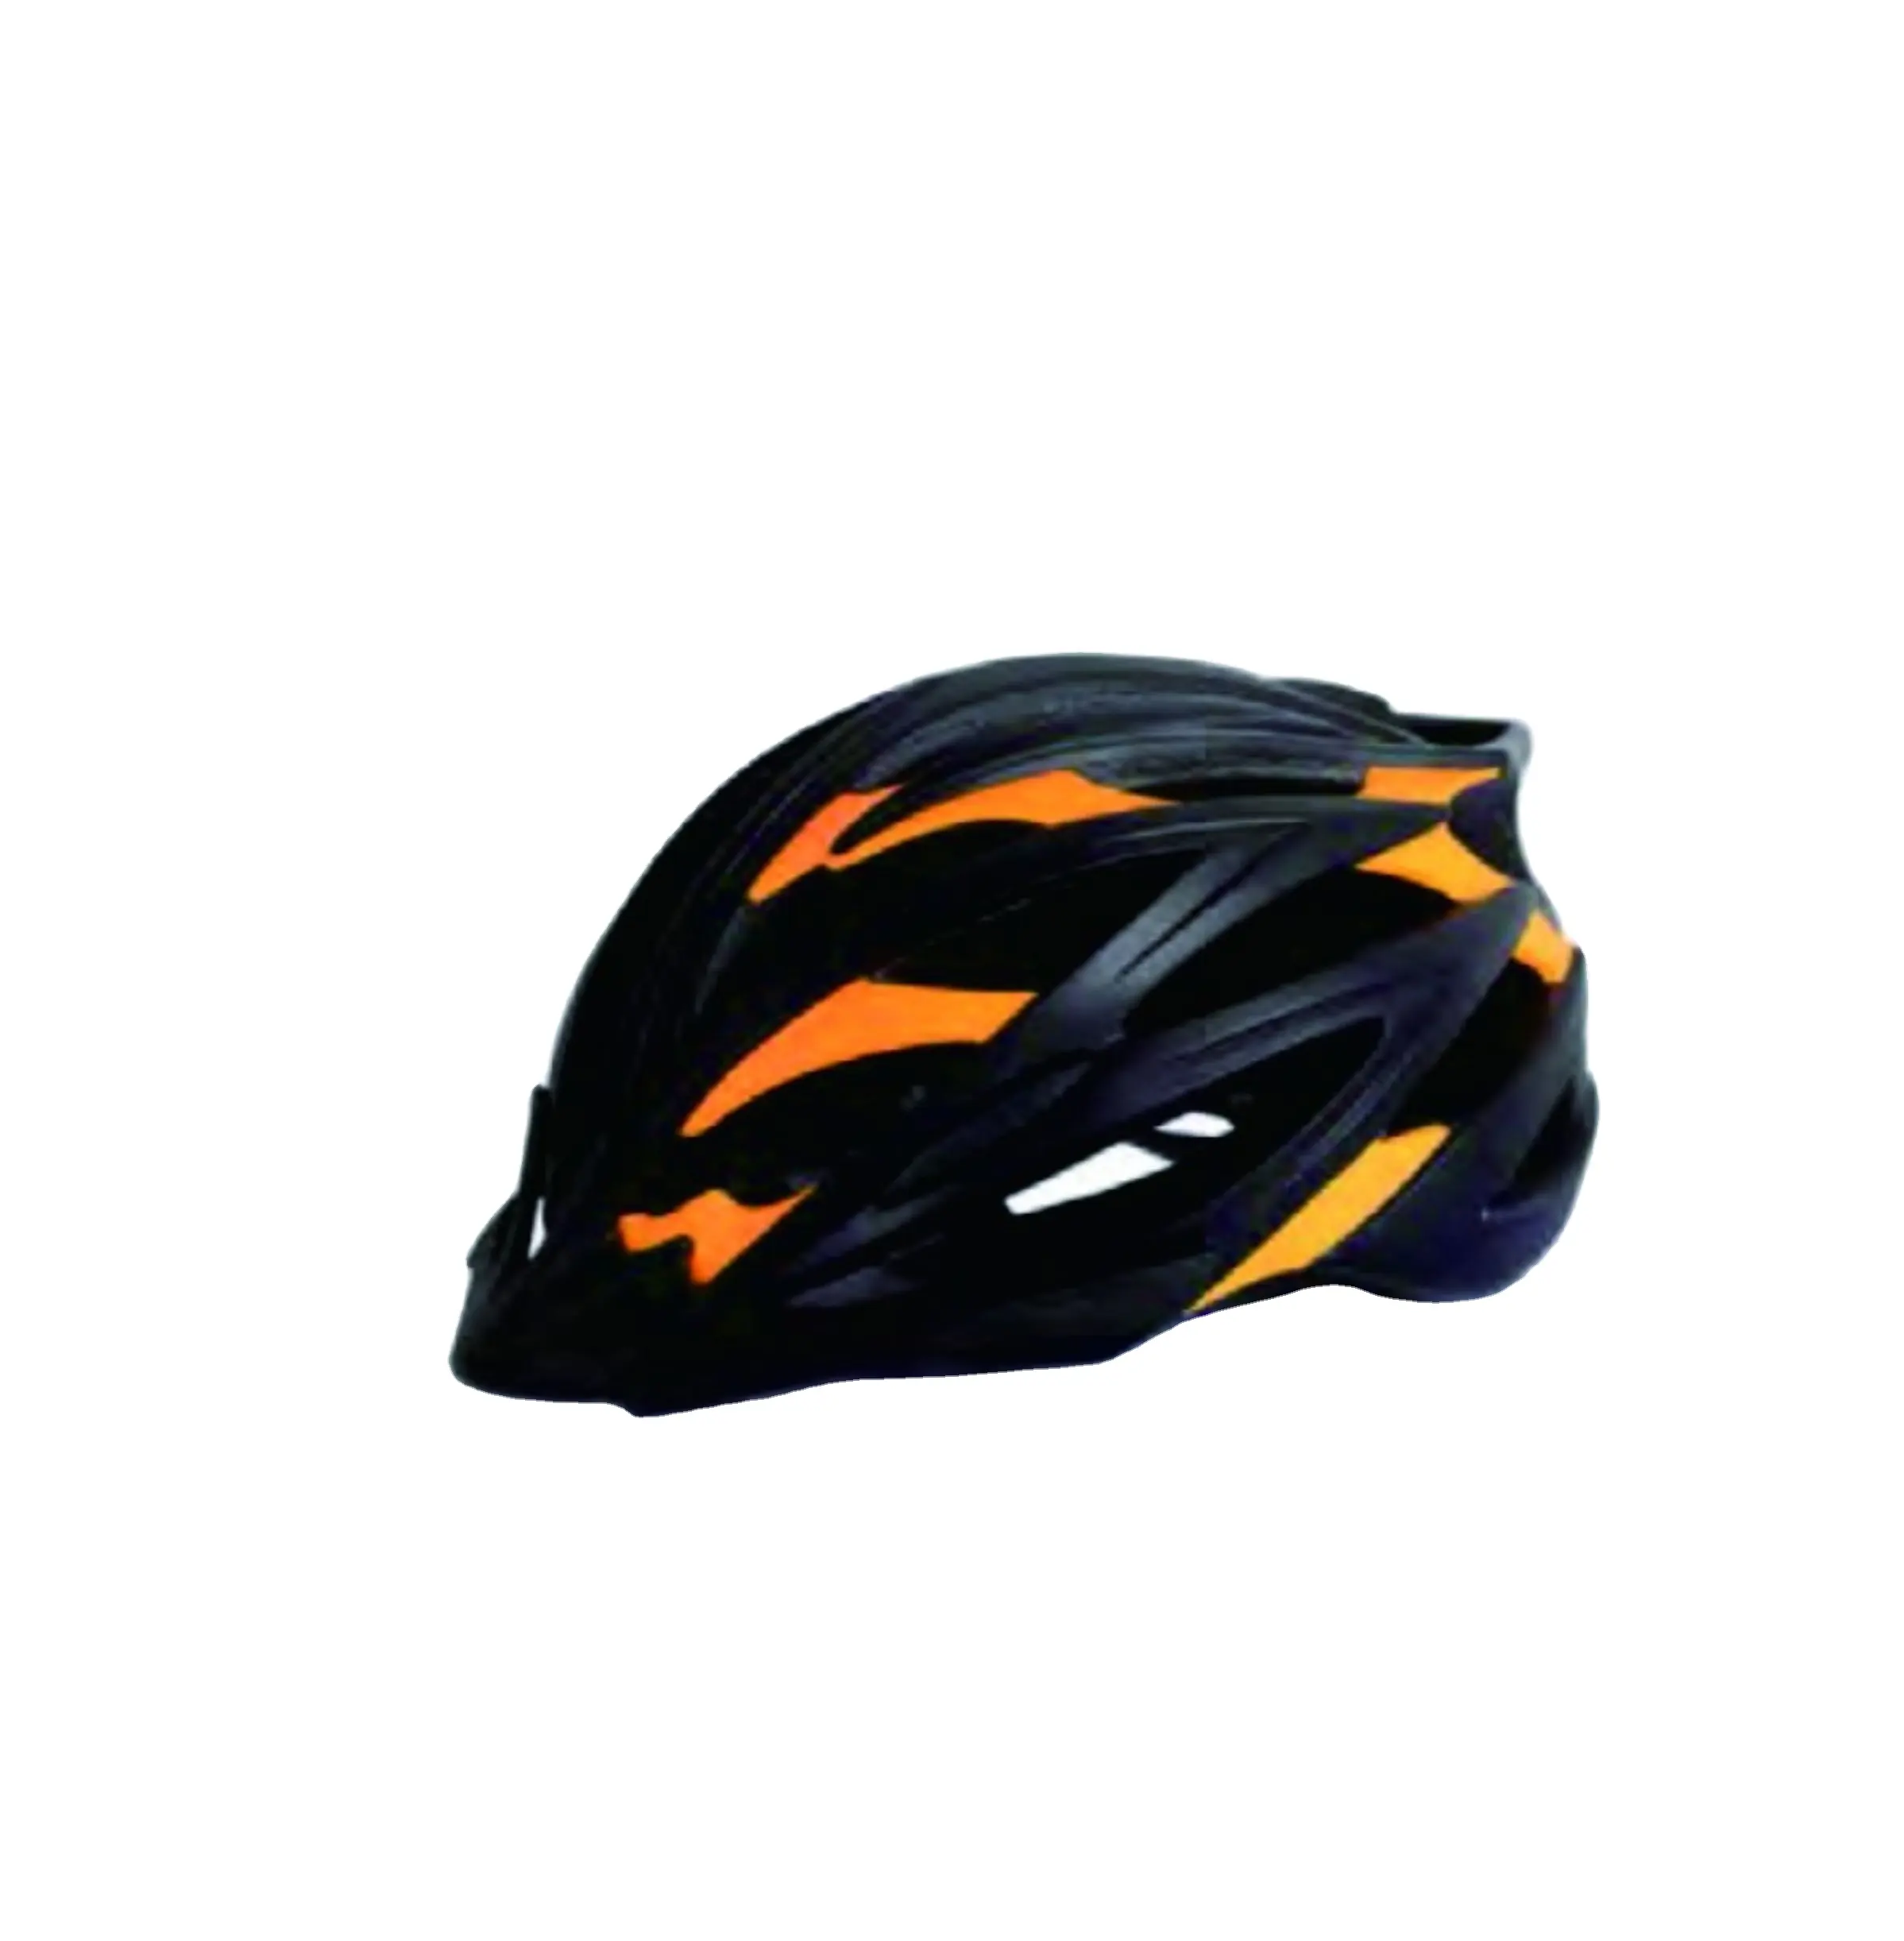 최신 중국어 다채로운 트윈 쉘 S/M/L 크기 플라스틱 산 자전거 헬멧 스포츠